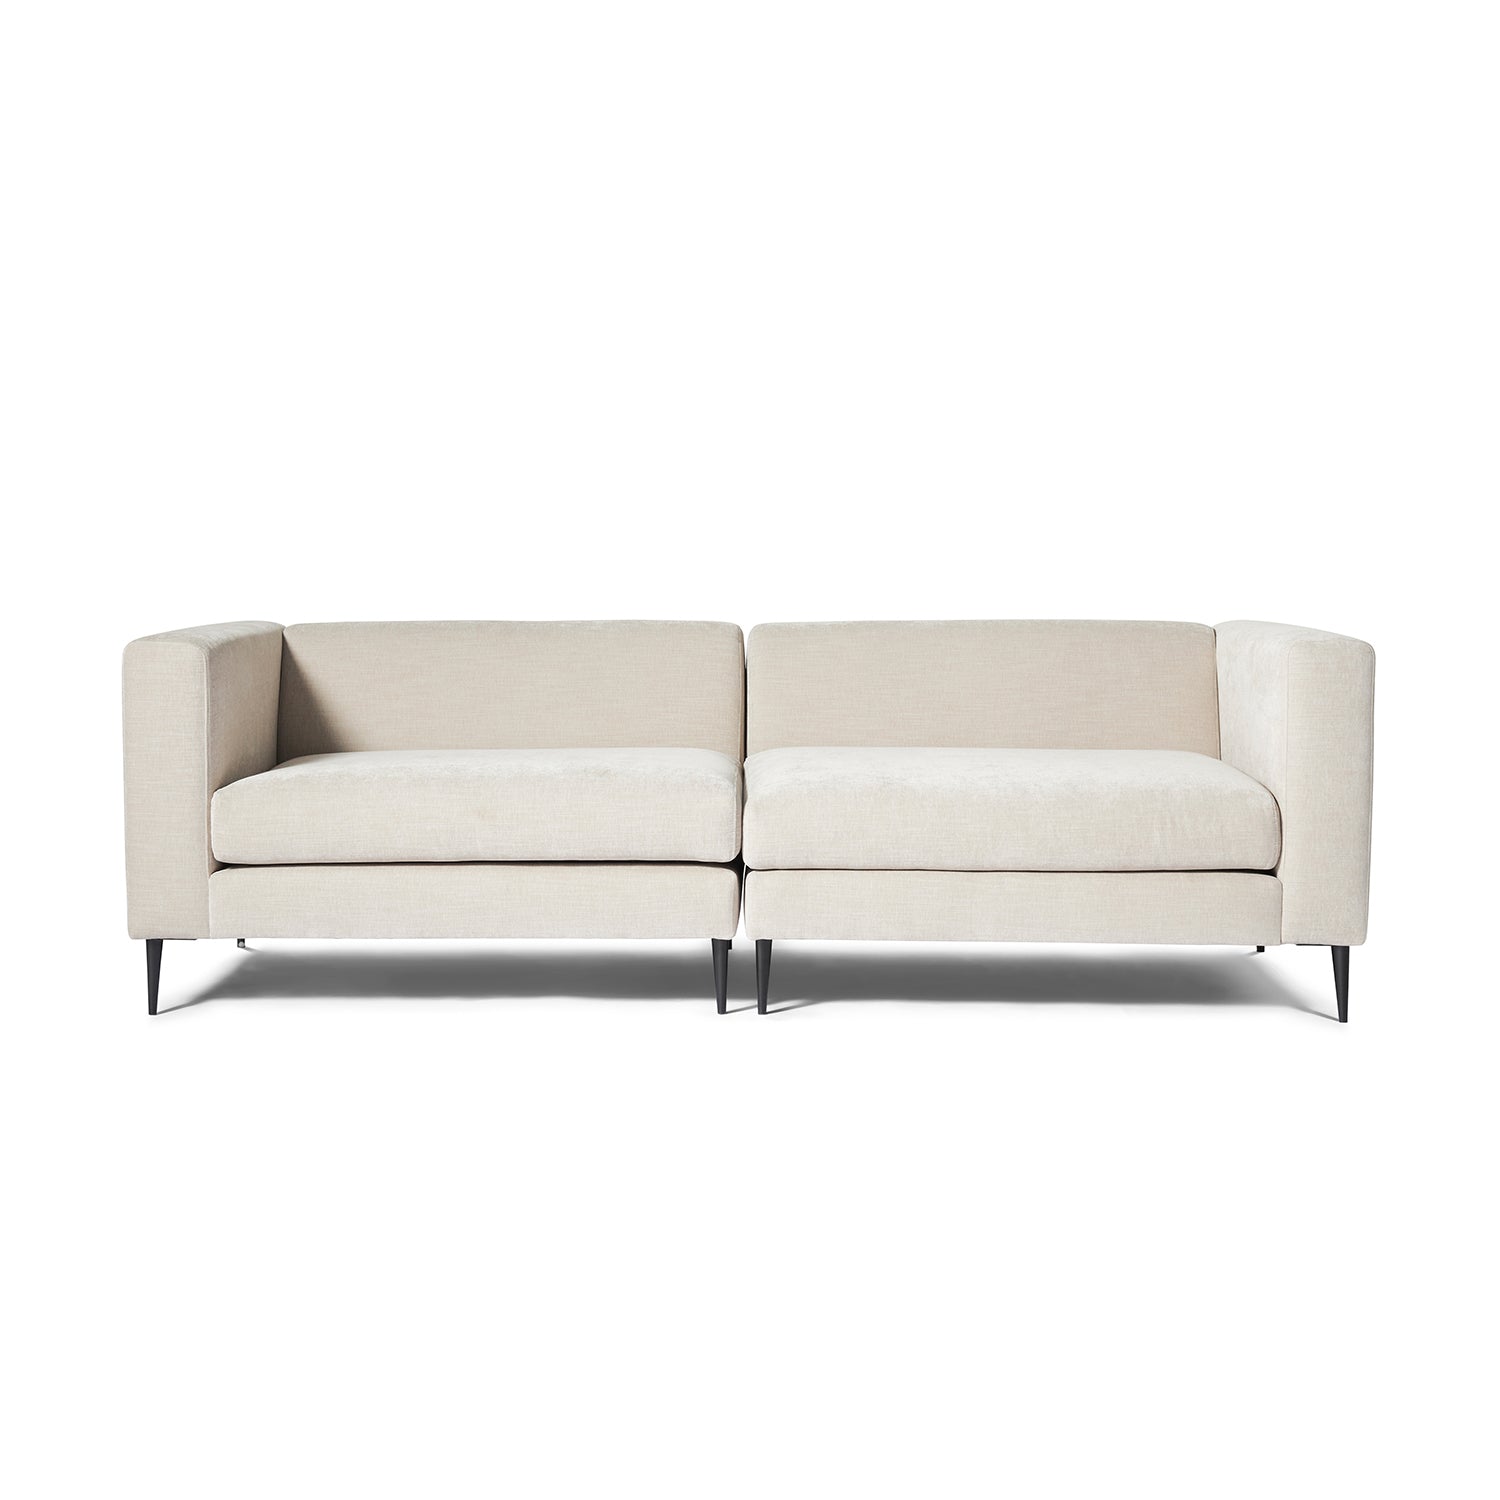 Malaga XL 2 personers sofa - Møbelkompagniet